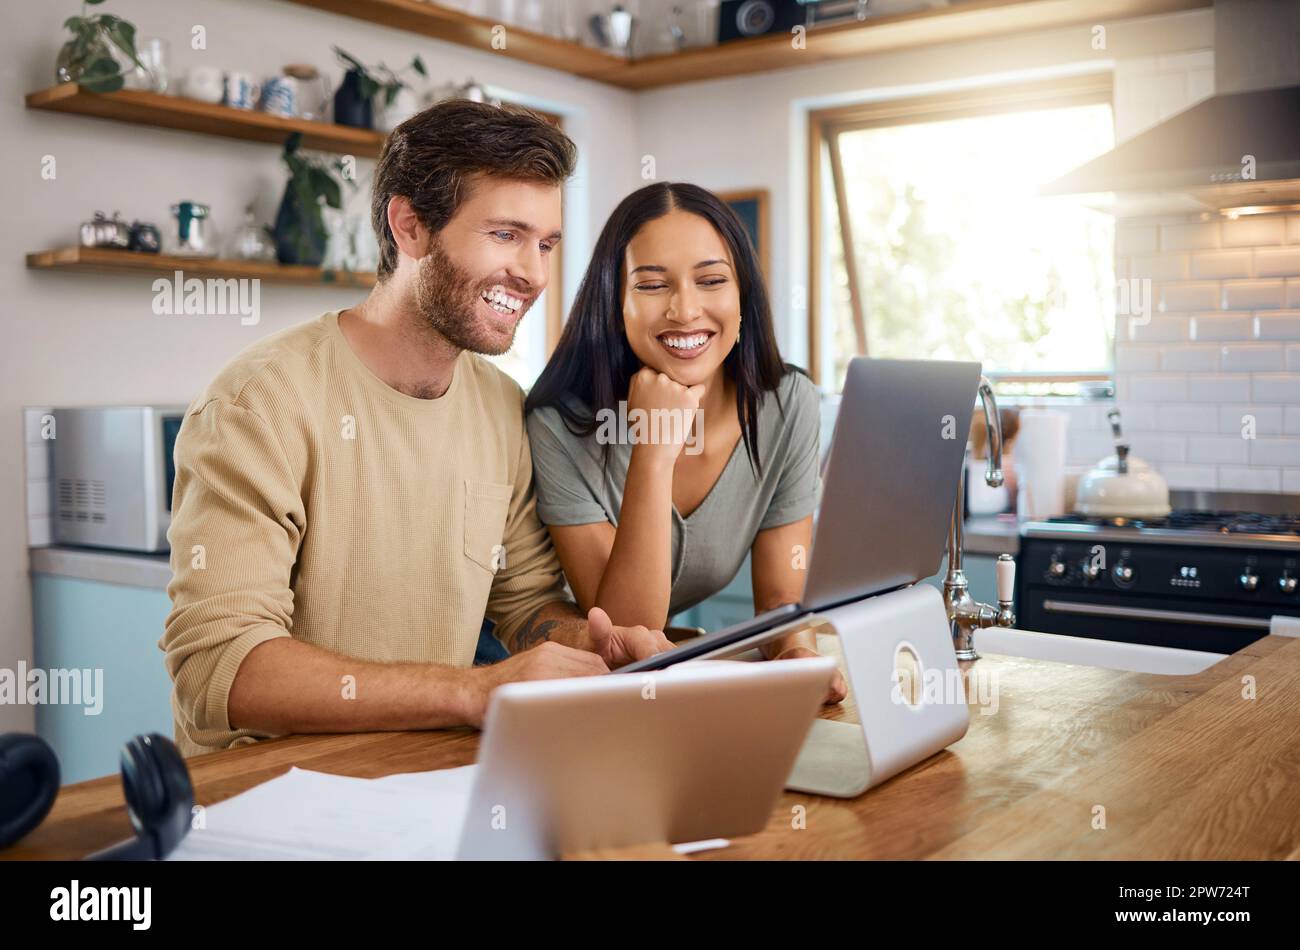 Glücklicher junger Kaukasier, der an einem Laptop arbeitet, während seine Frau neben ihm steht und sie zusammen auf den Bildschirm schauen. Ein Mann, der freiberuflich arbeitet und Showin Stockfoto